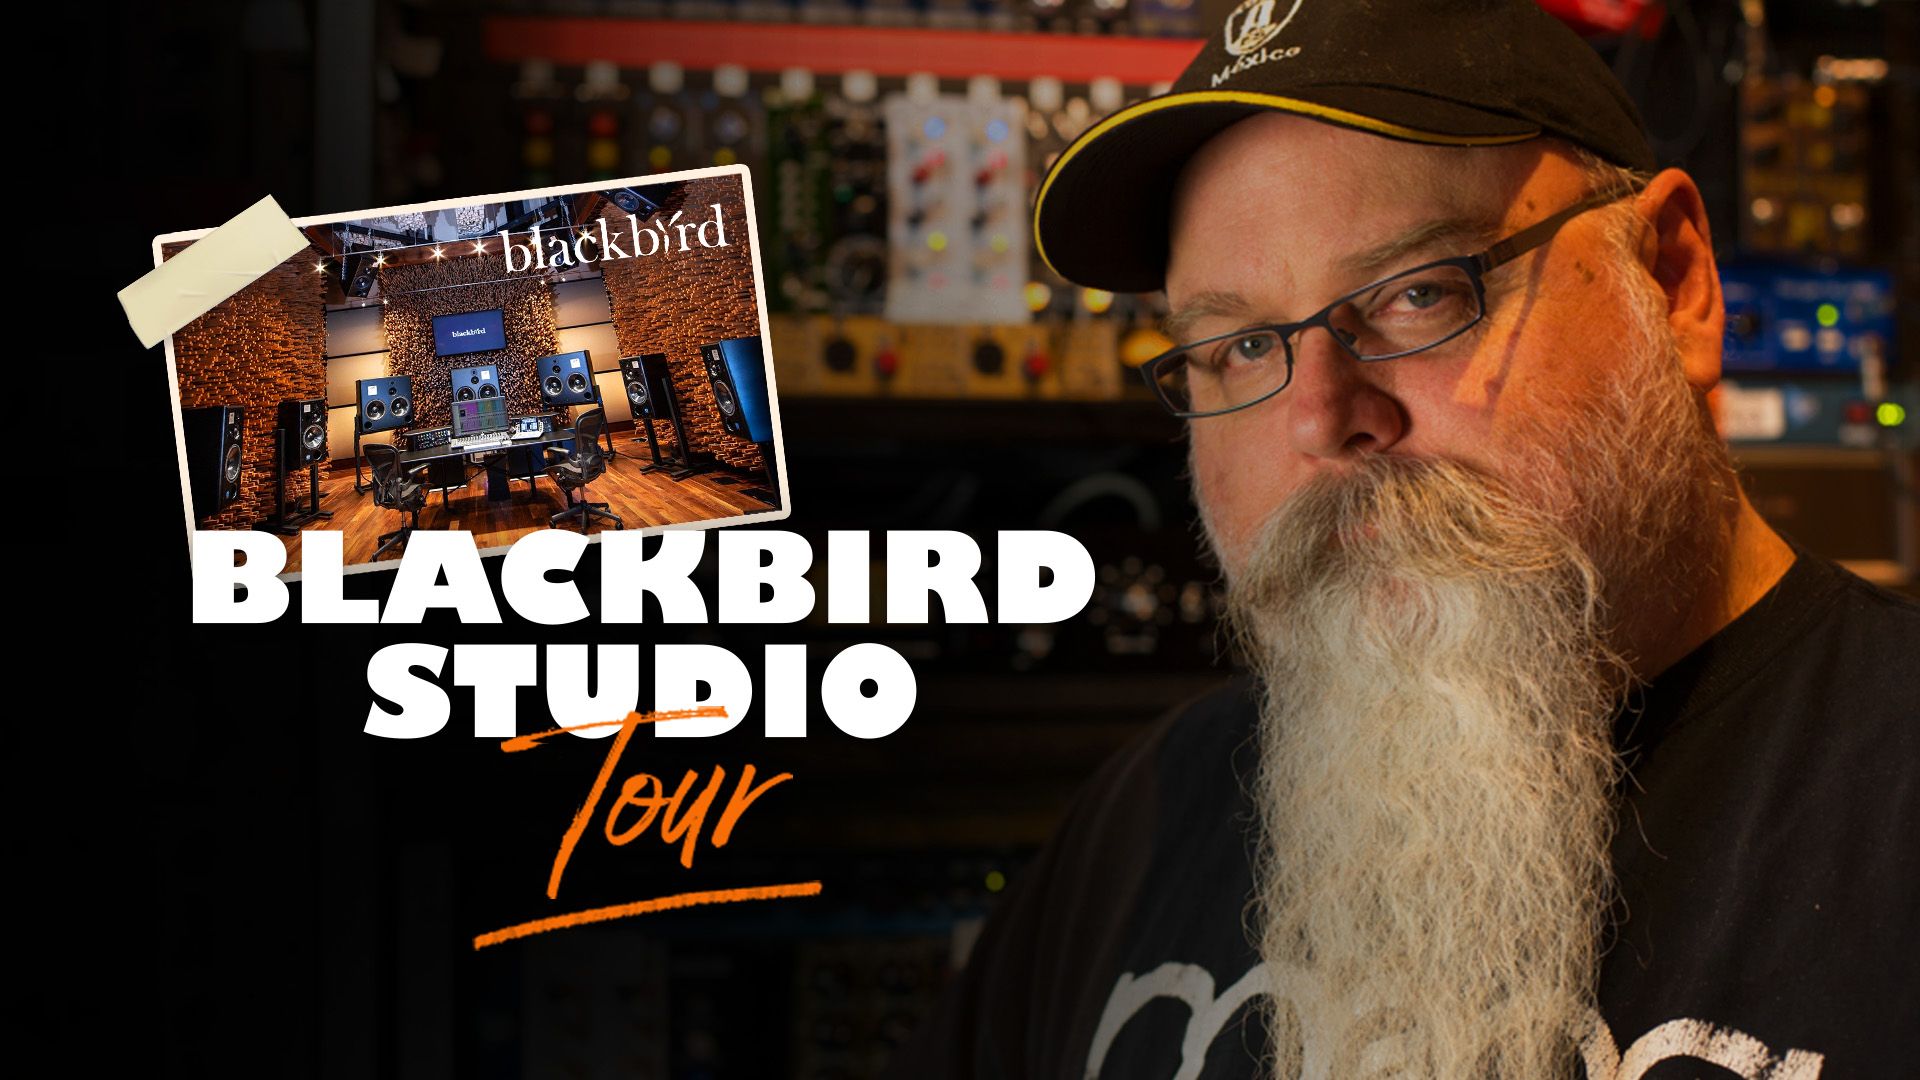 Blackbird Studio tour